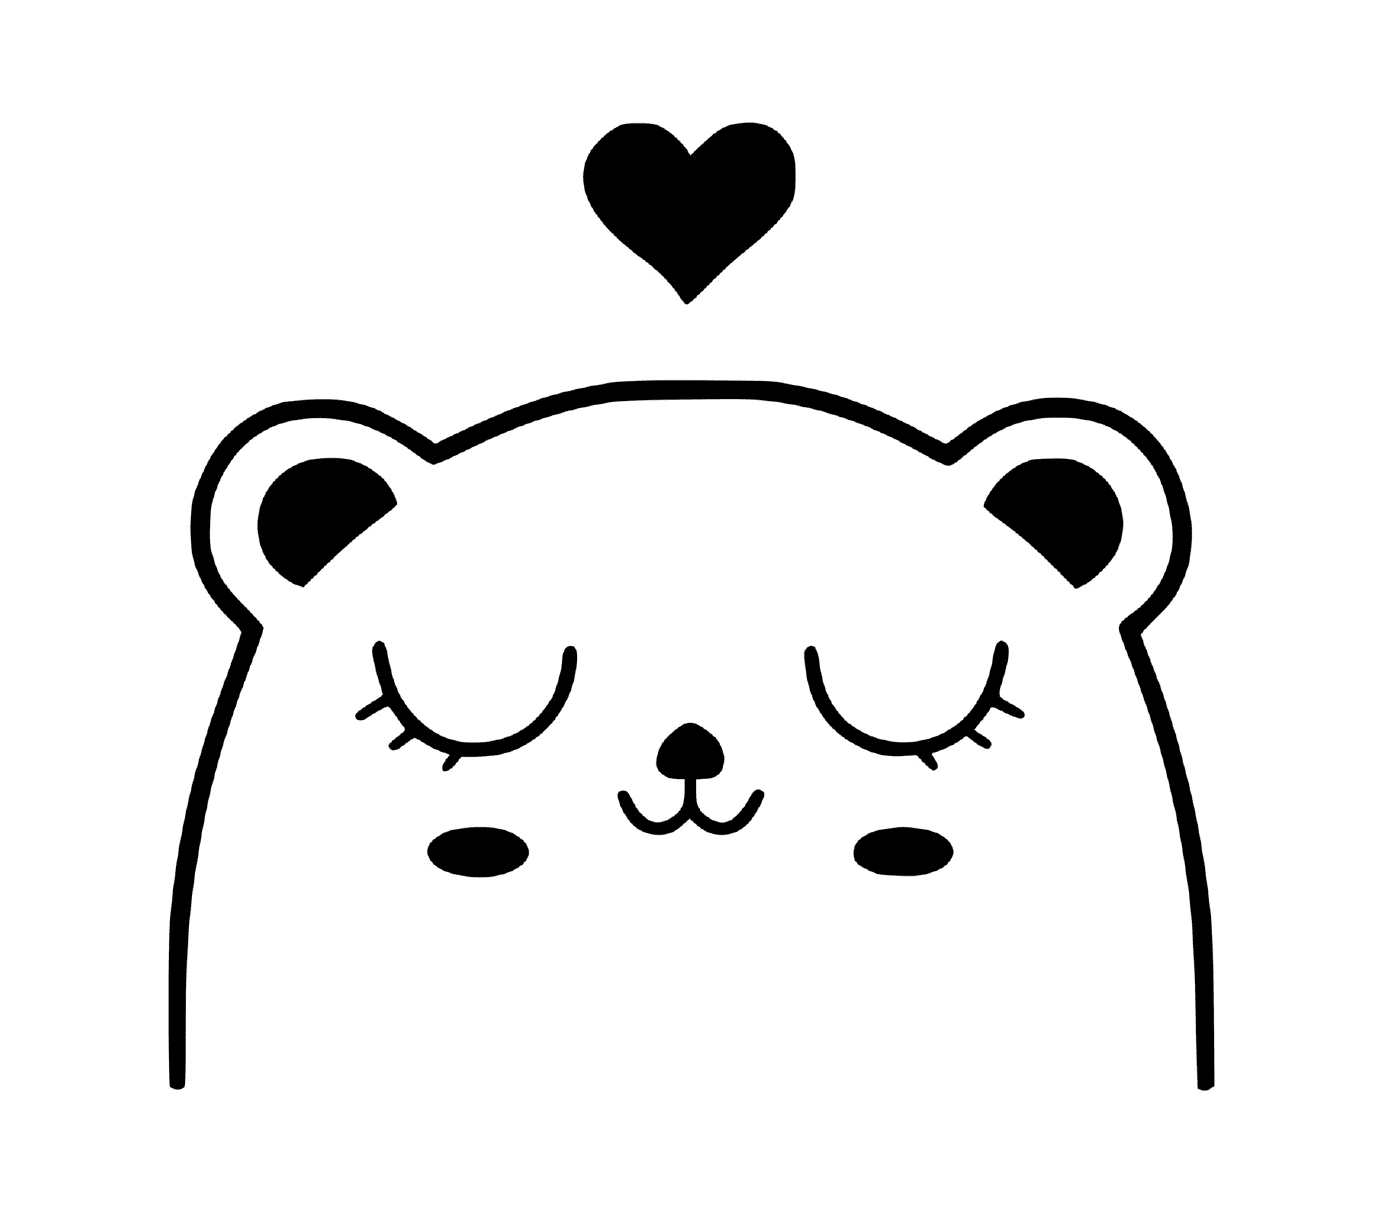  Um urso com um coração acima dele 